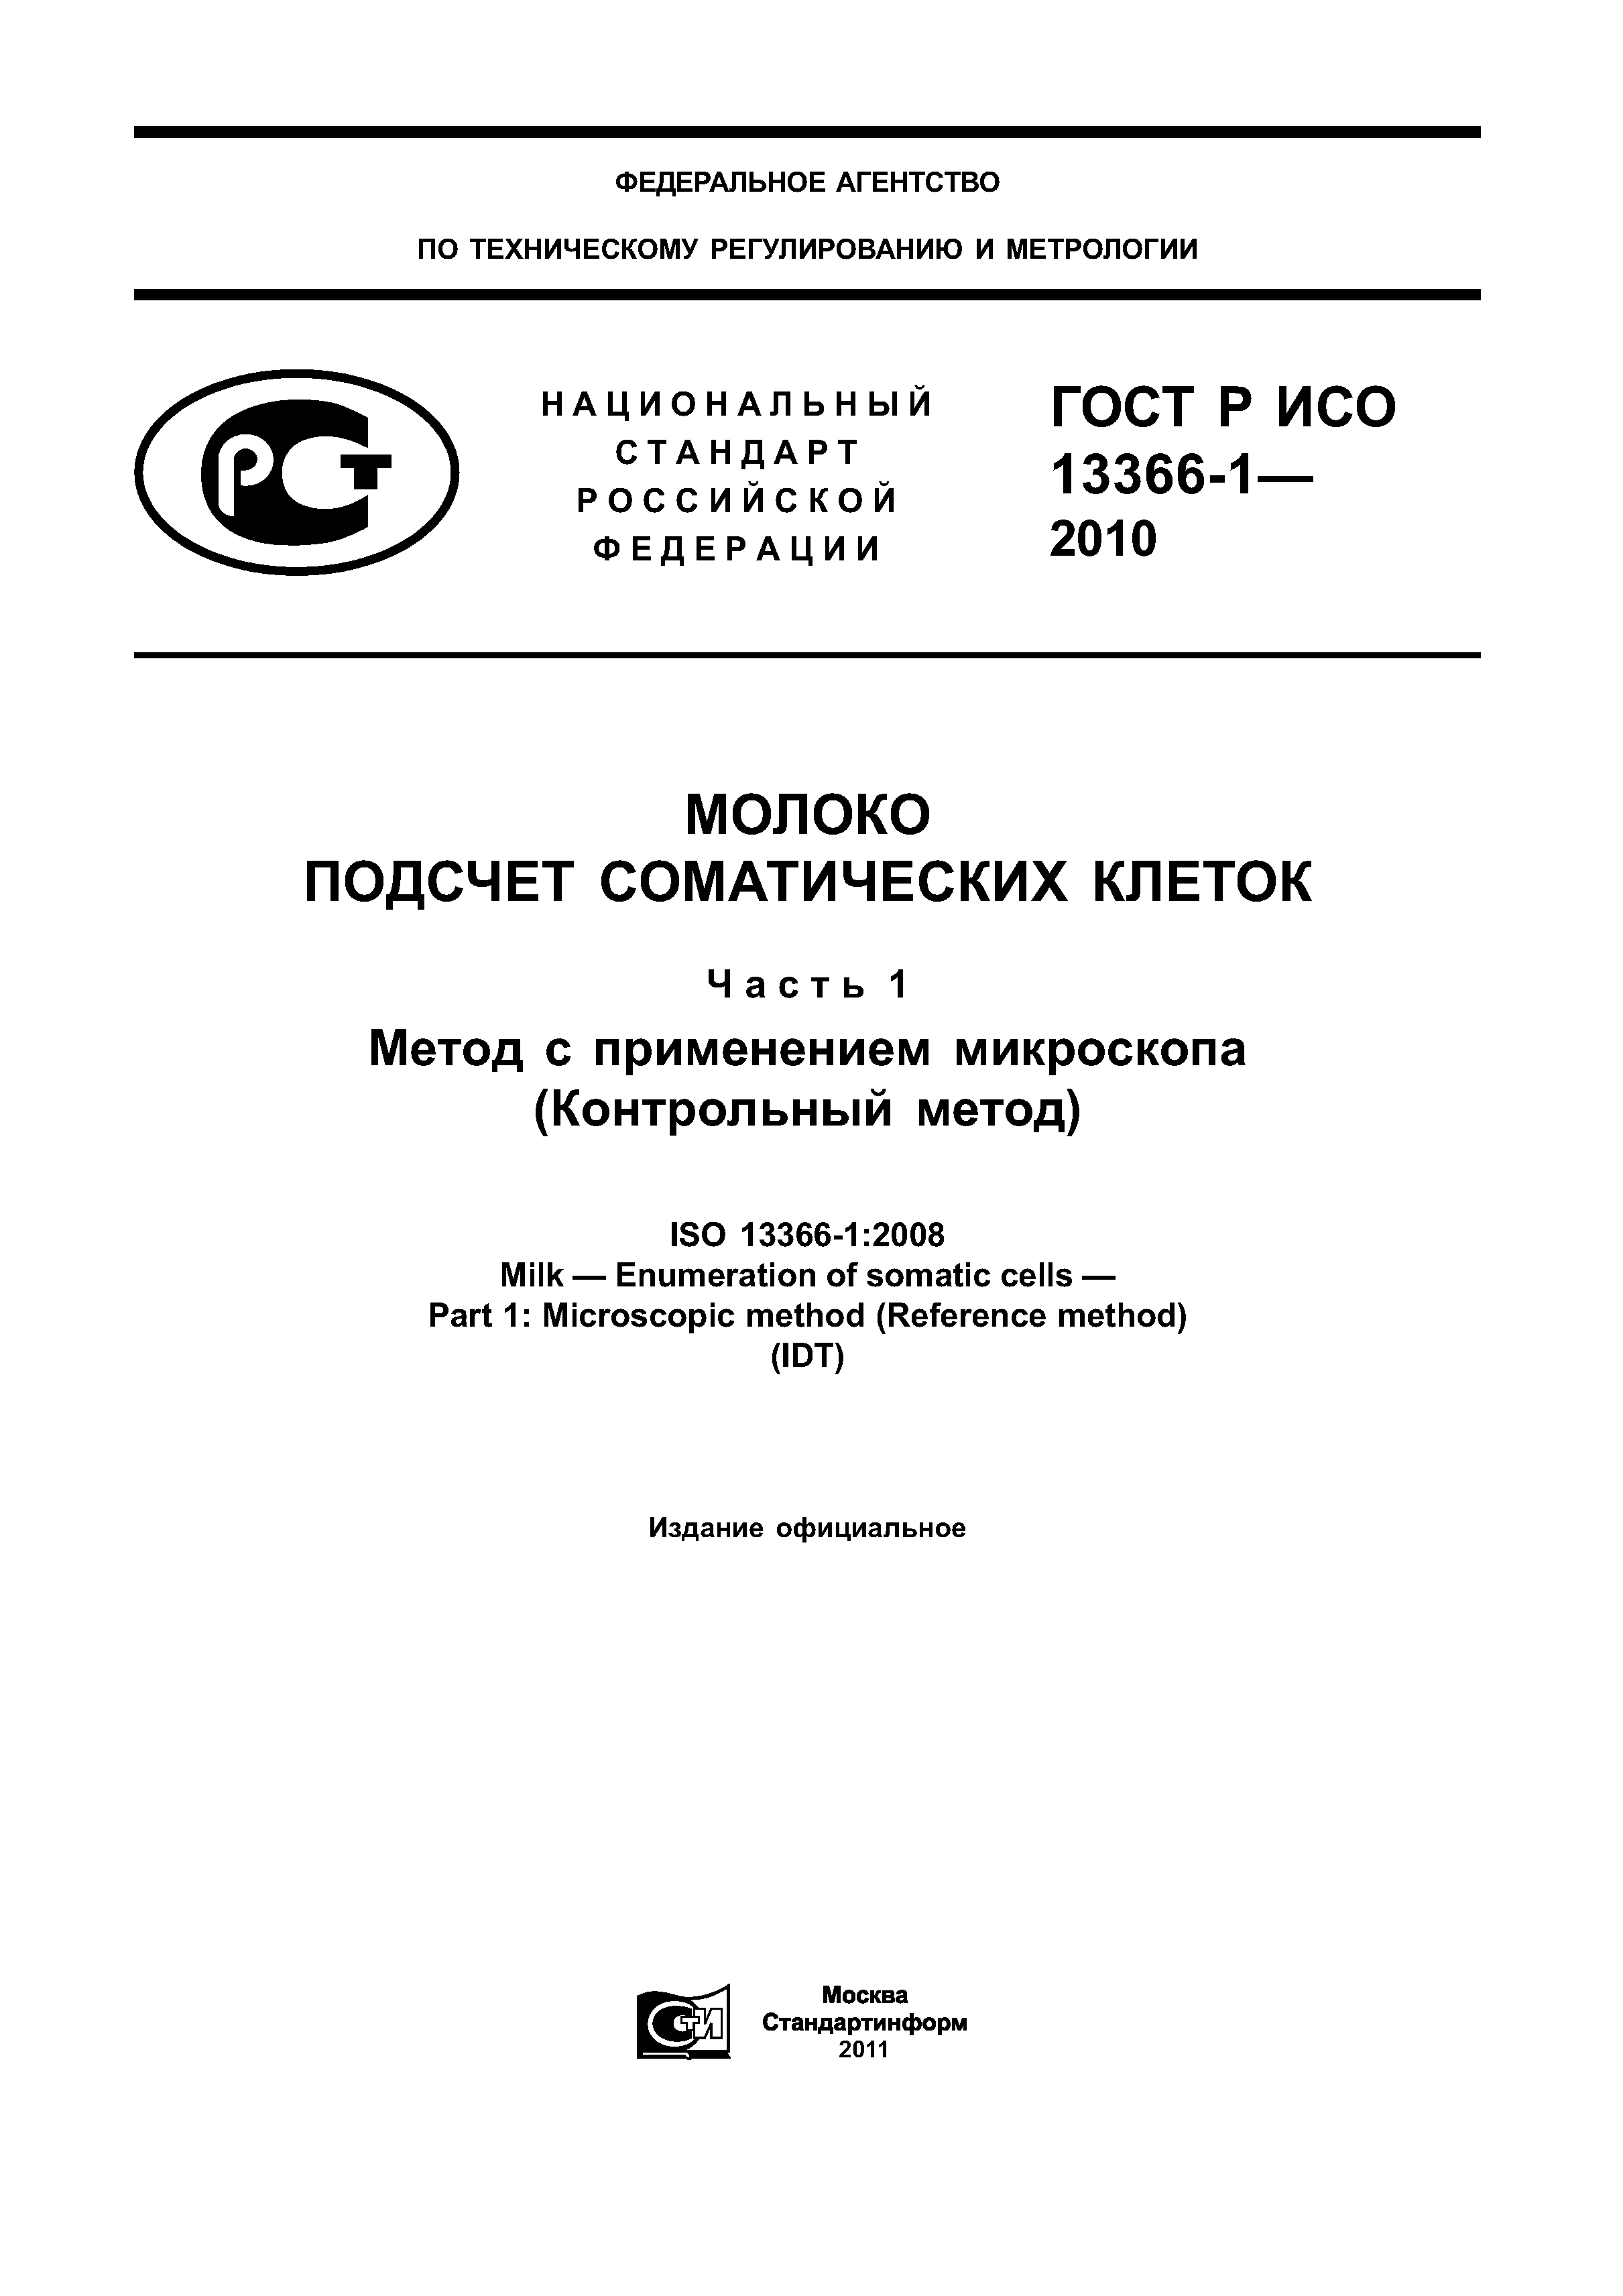 ГОСТ Р ИСО 13366-1-2010